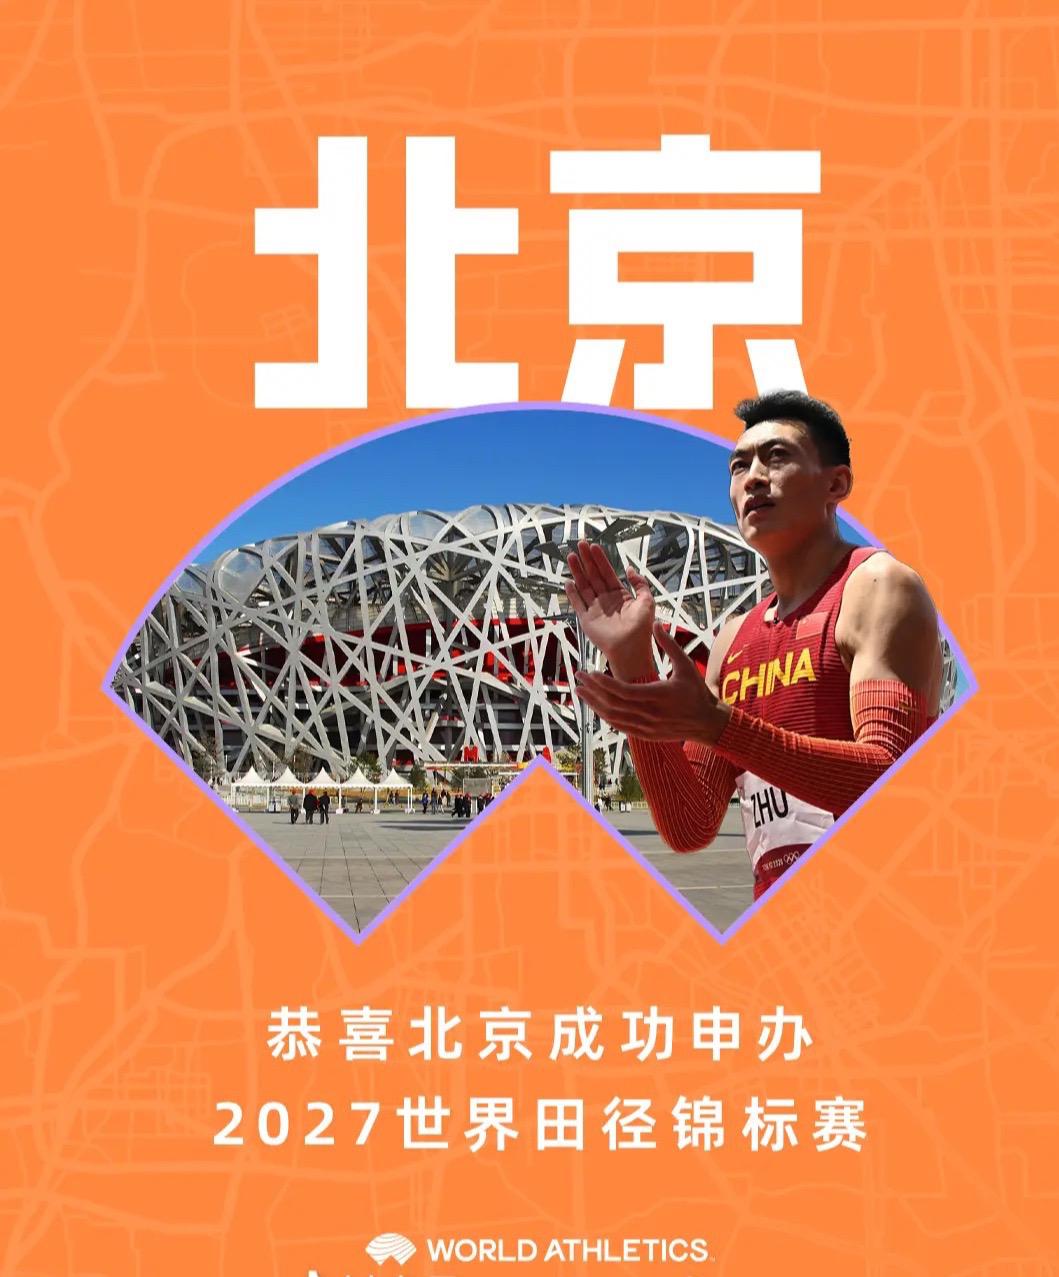 恭喜北京成功申办2027年世界田径世锦赛